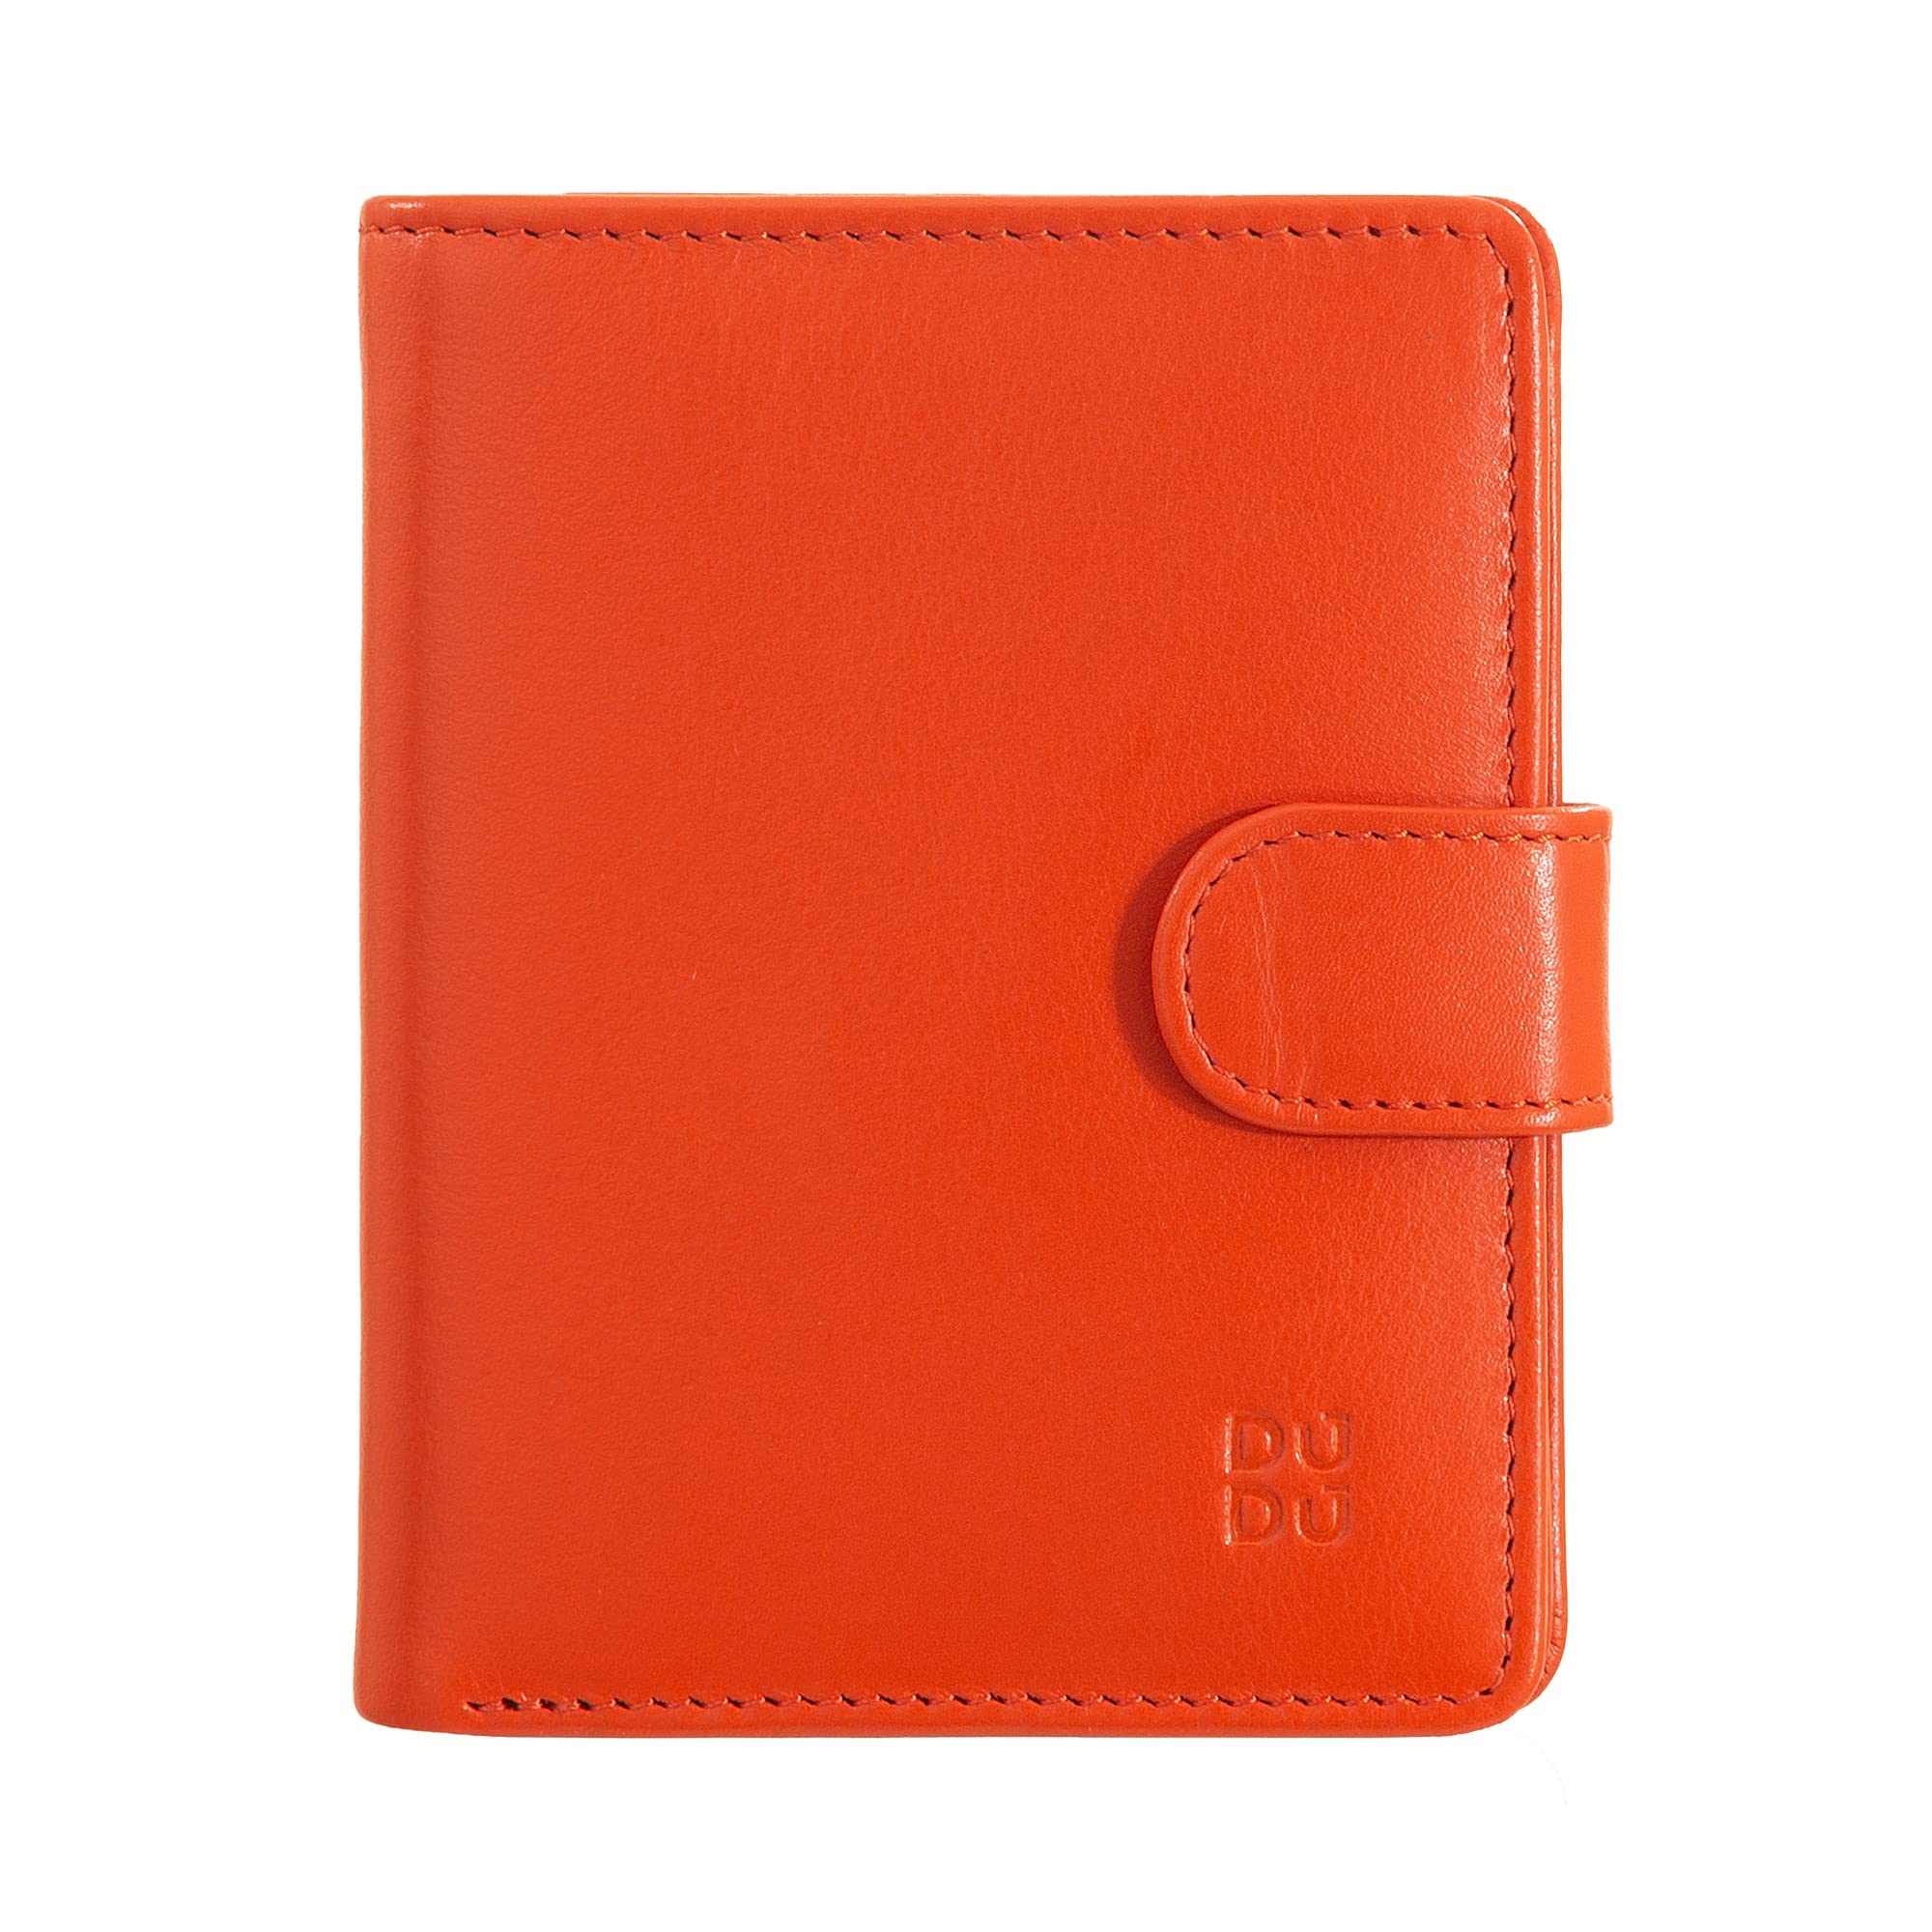 DUDU Damen Geldbörse aus echtes Leder, kleines Leder RFID-Kartenetui mit Reißverschluss, Münzfach, Außenverschluss Orange